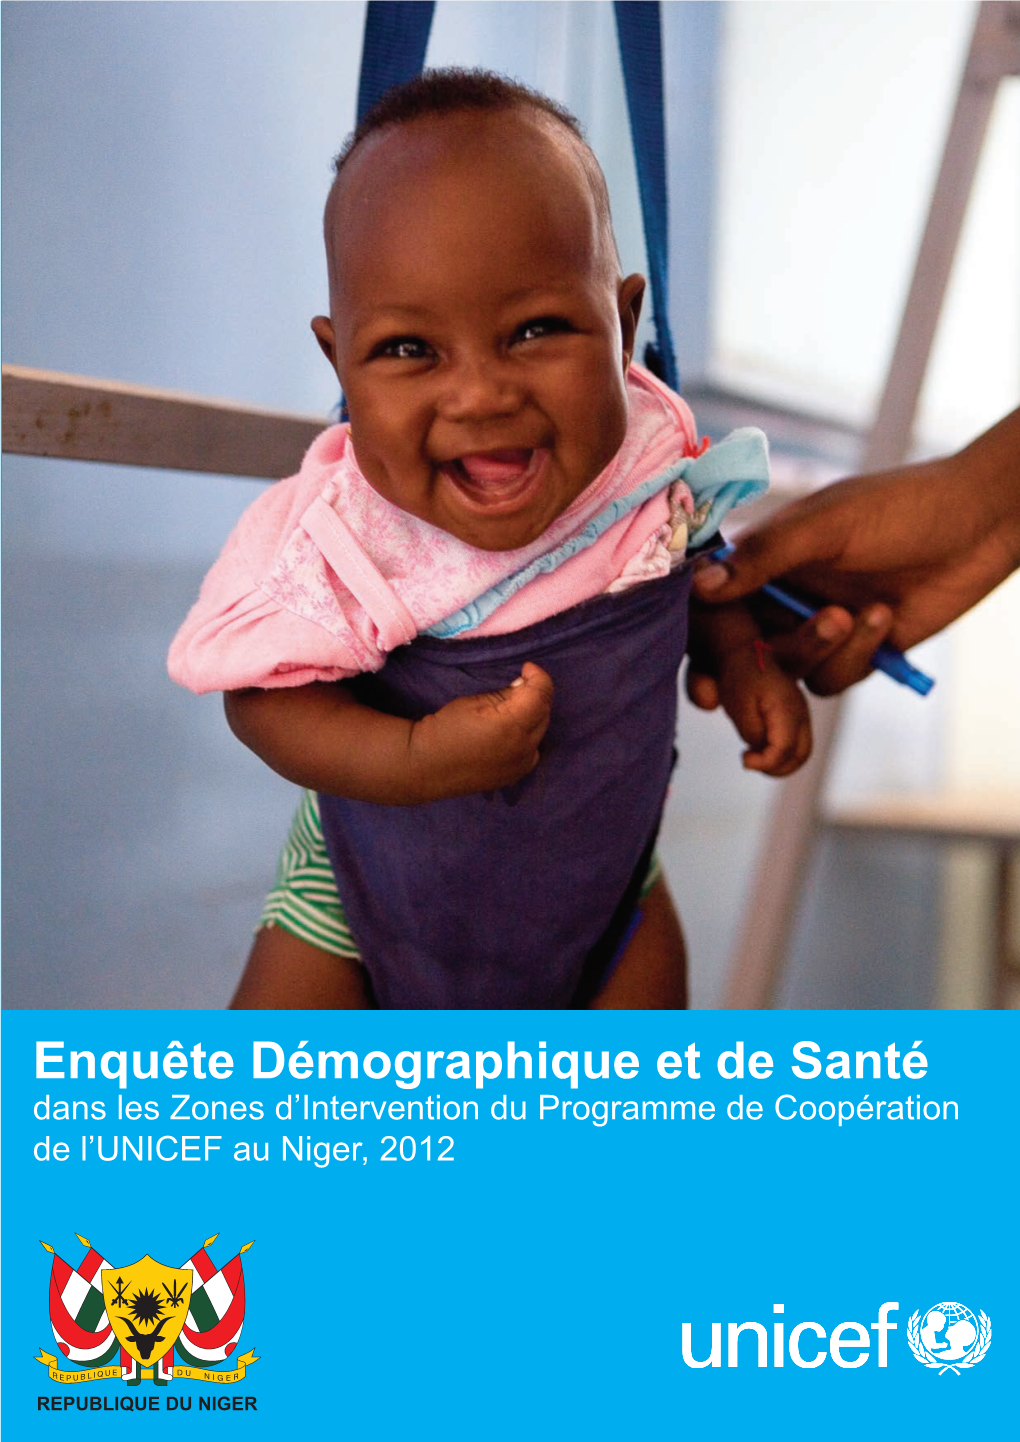 Enquête Démographique Et De Santé Dans Les Zones D’Intervention Du Programme De Coopération L’UNICEF Au Niger, 2012